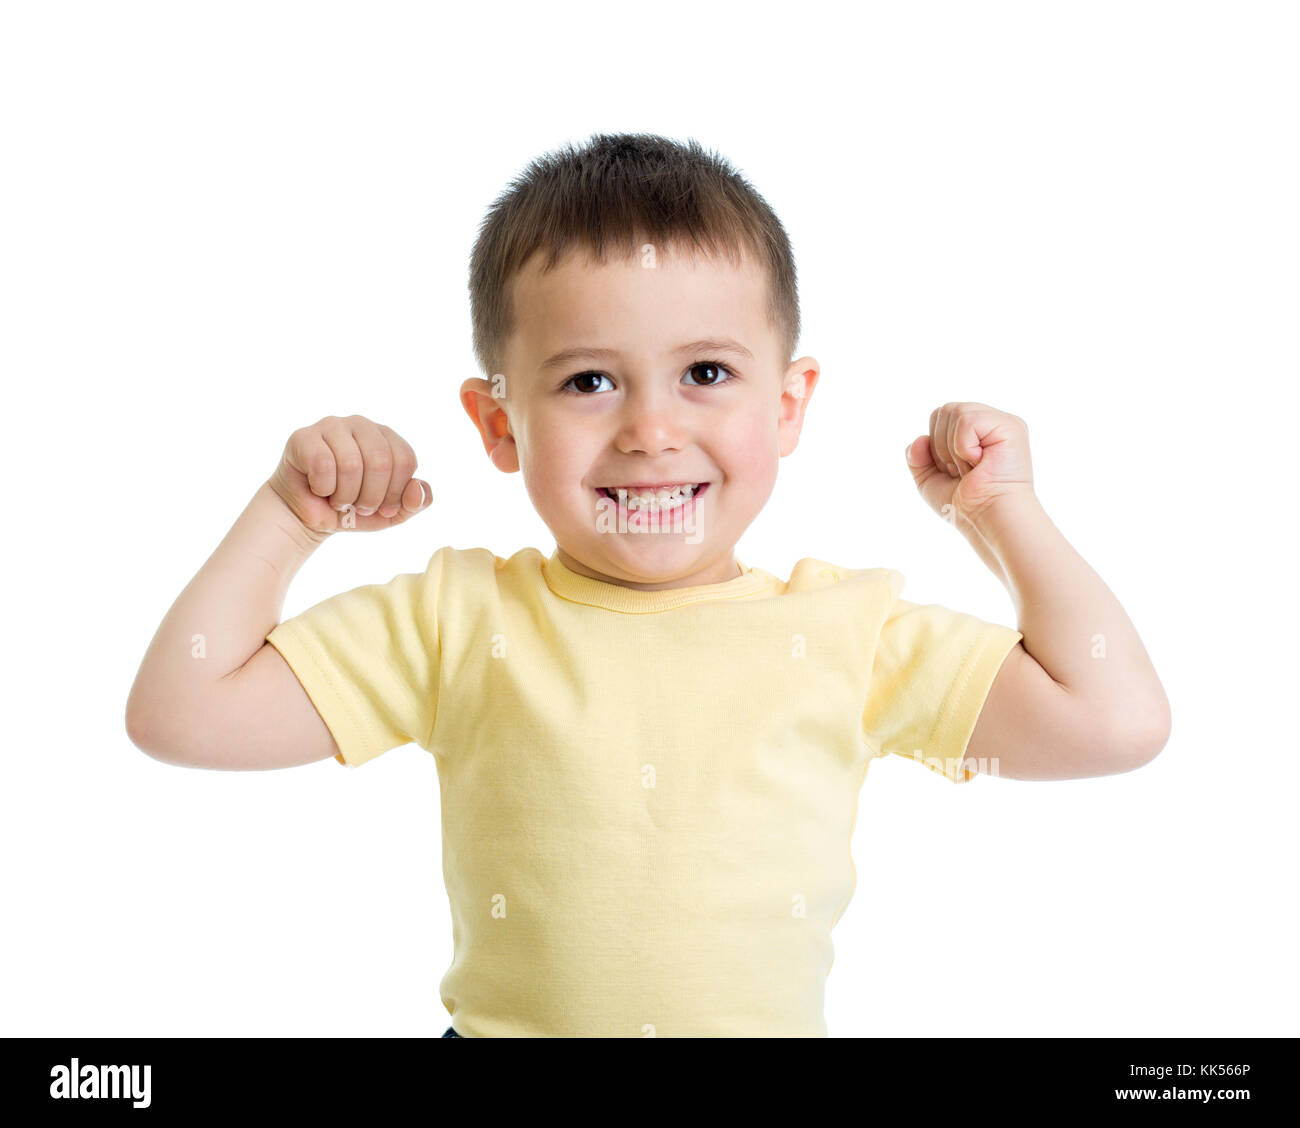 Portrait of cute kid montrant les muscles de ses bras, isolated on white Banque D'Images